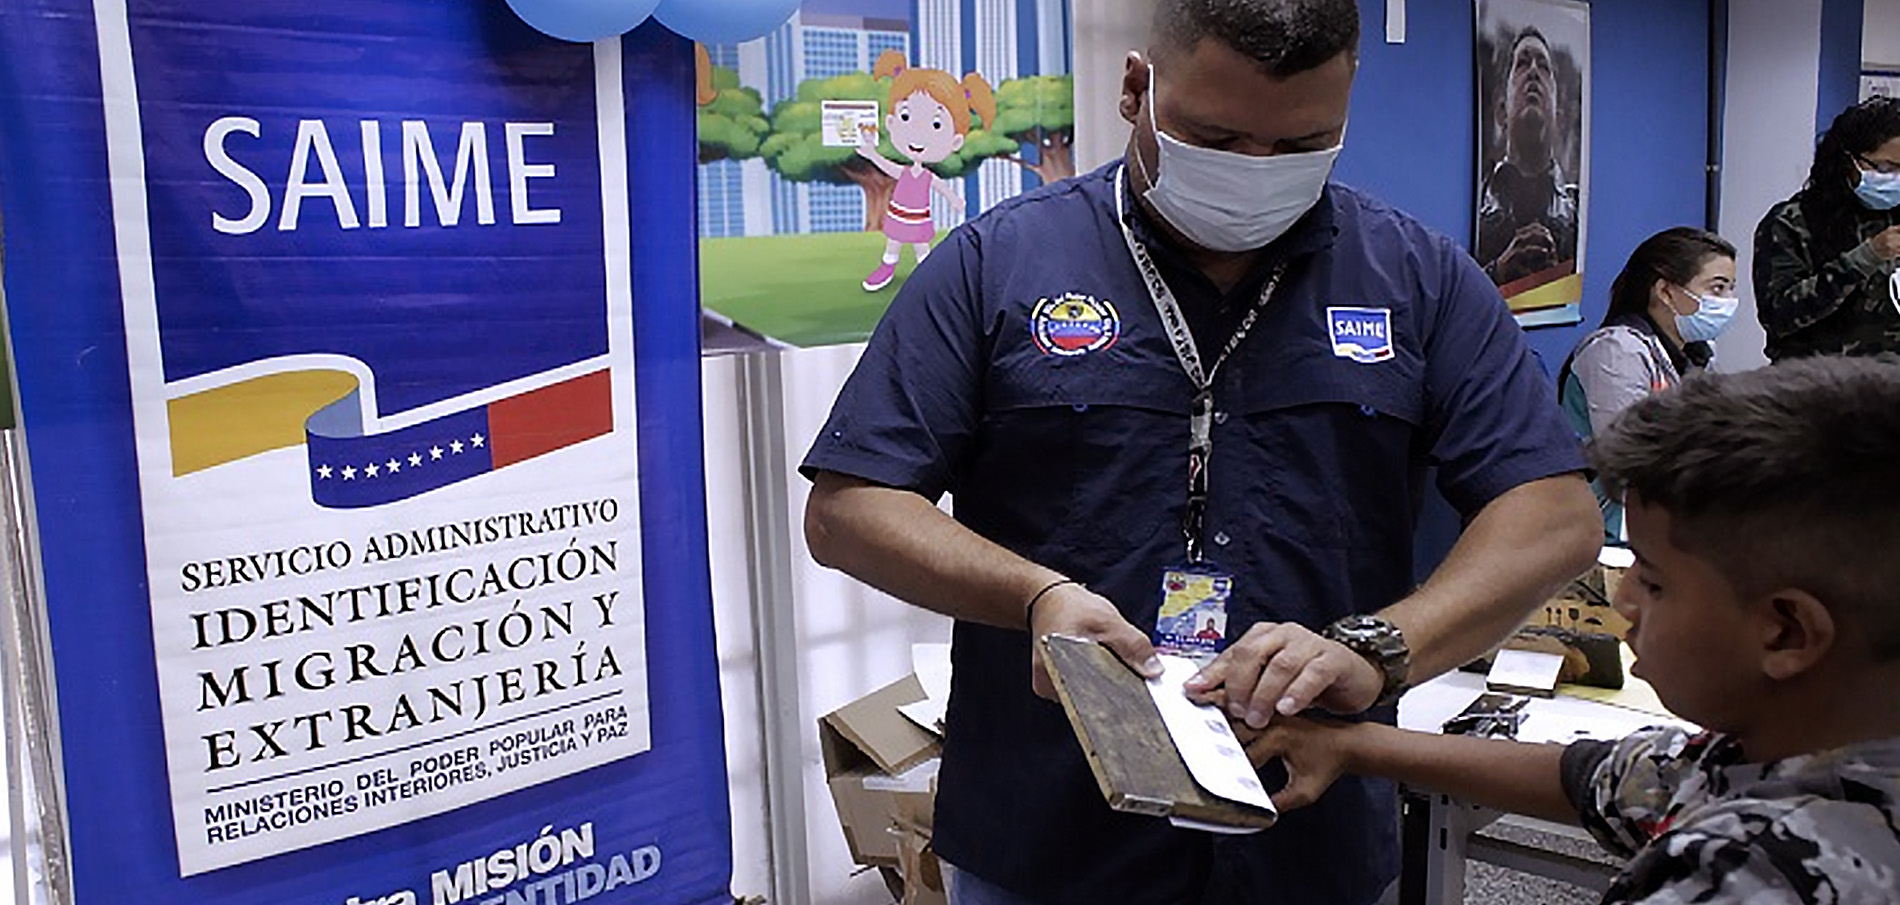 Saime habilita más de 90 oficinas para cedulación de niños » Diario El Tigrense